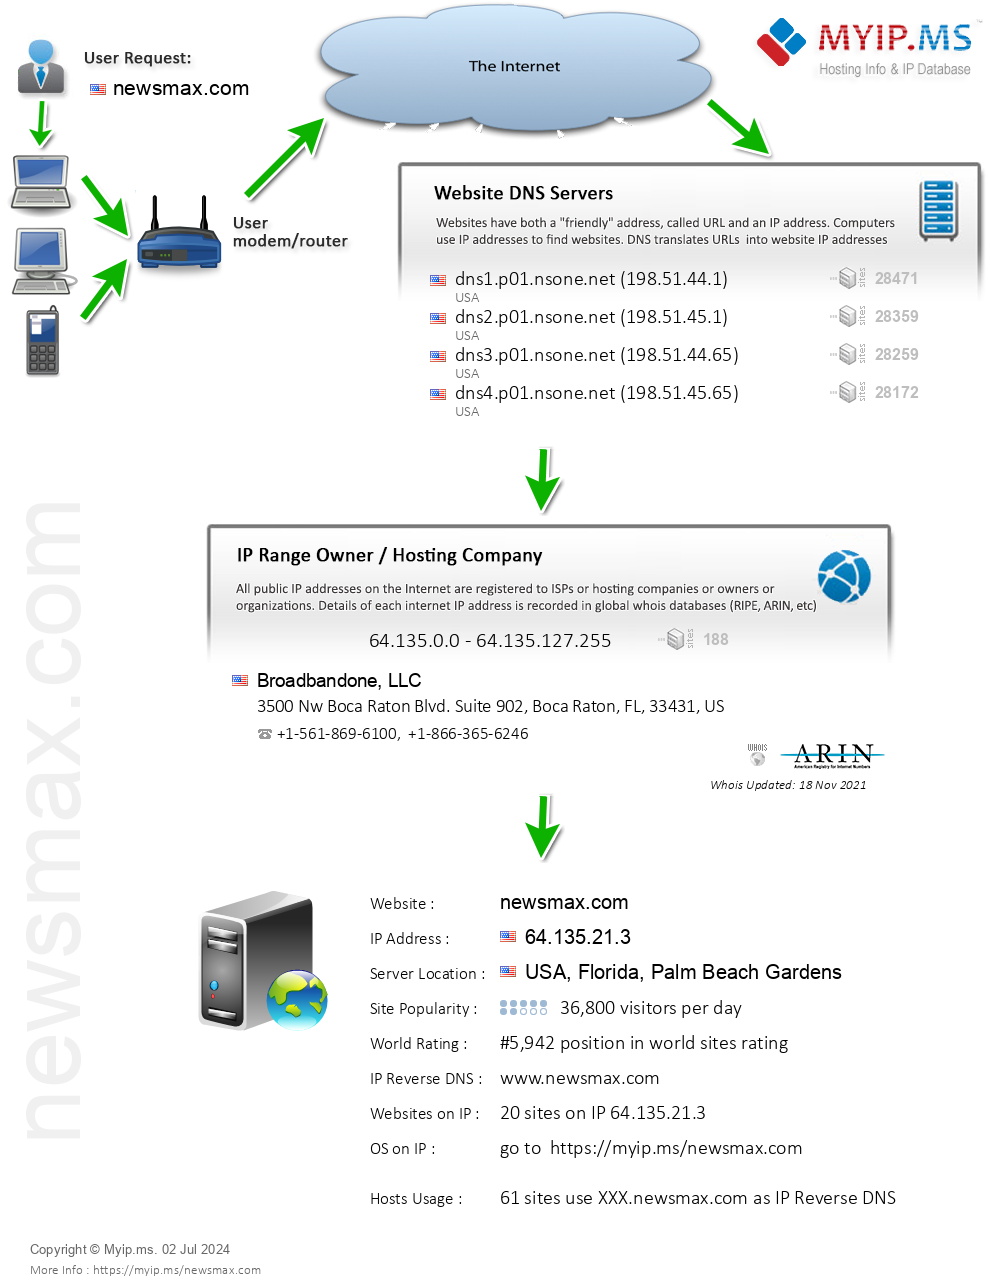 Newsmax.com - Website Hosting Visual IP Diagram